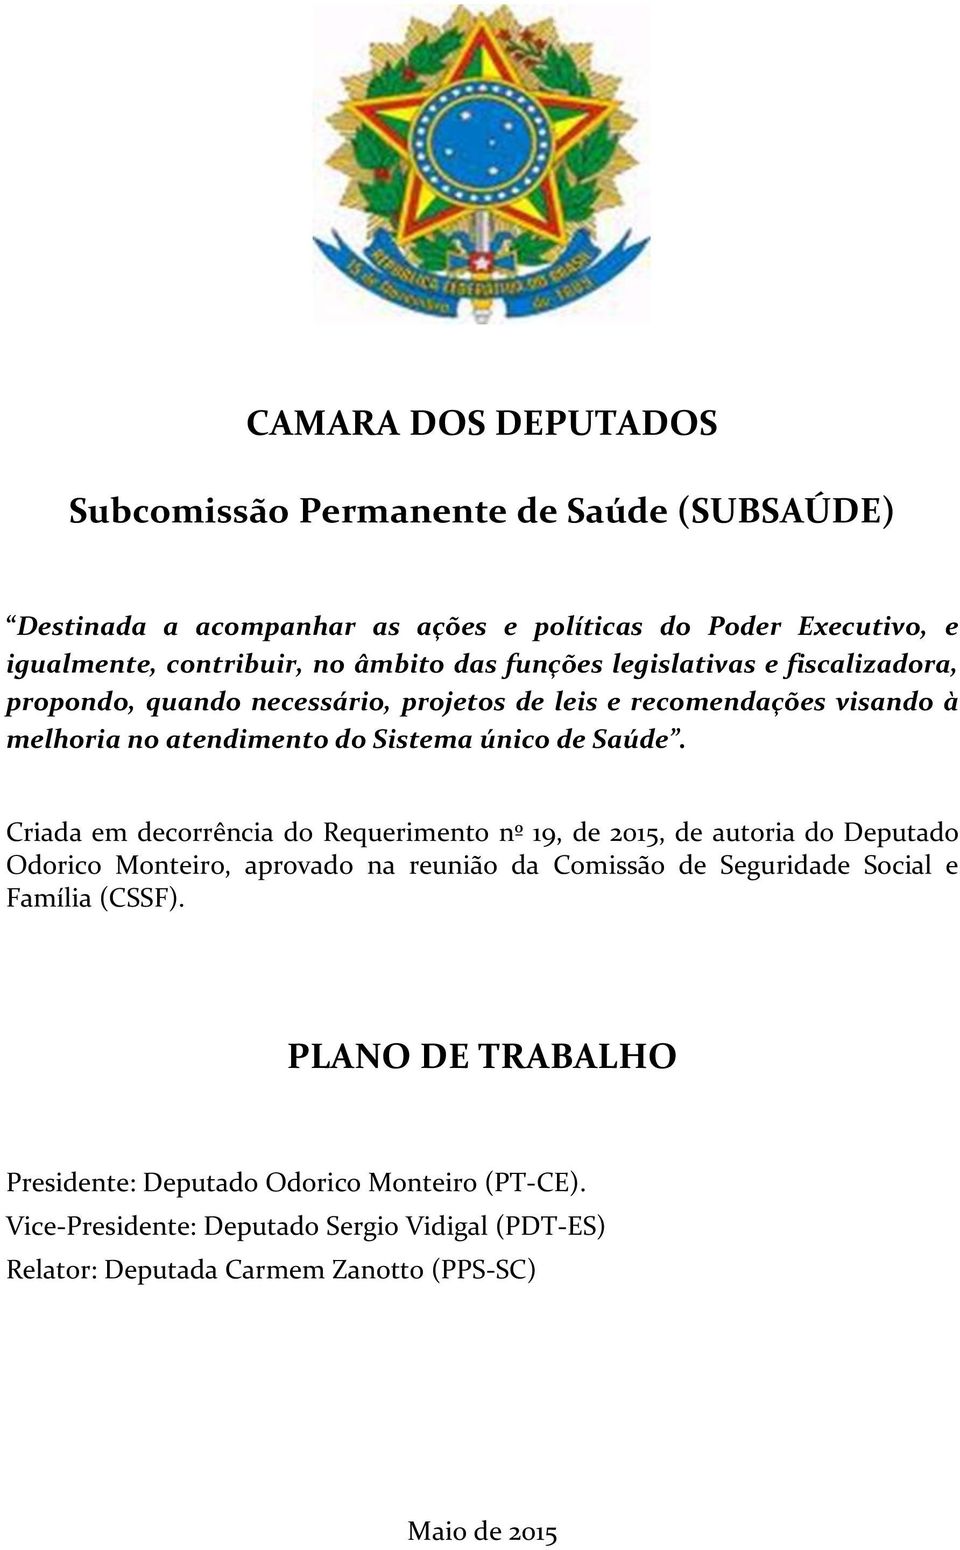 Criada em decorrência do Requerimento nº 19, de 2015, de autoria do Deputado Odorico Monteiro, aprovado na reunião da Comissão de Seguridade Social e Família (CSSF).